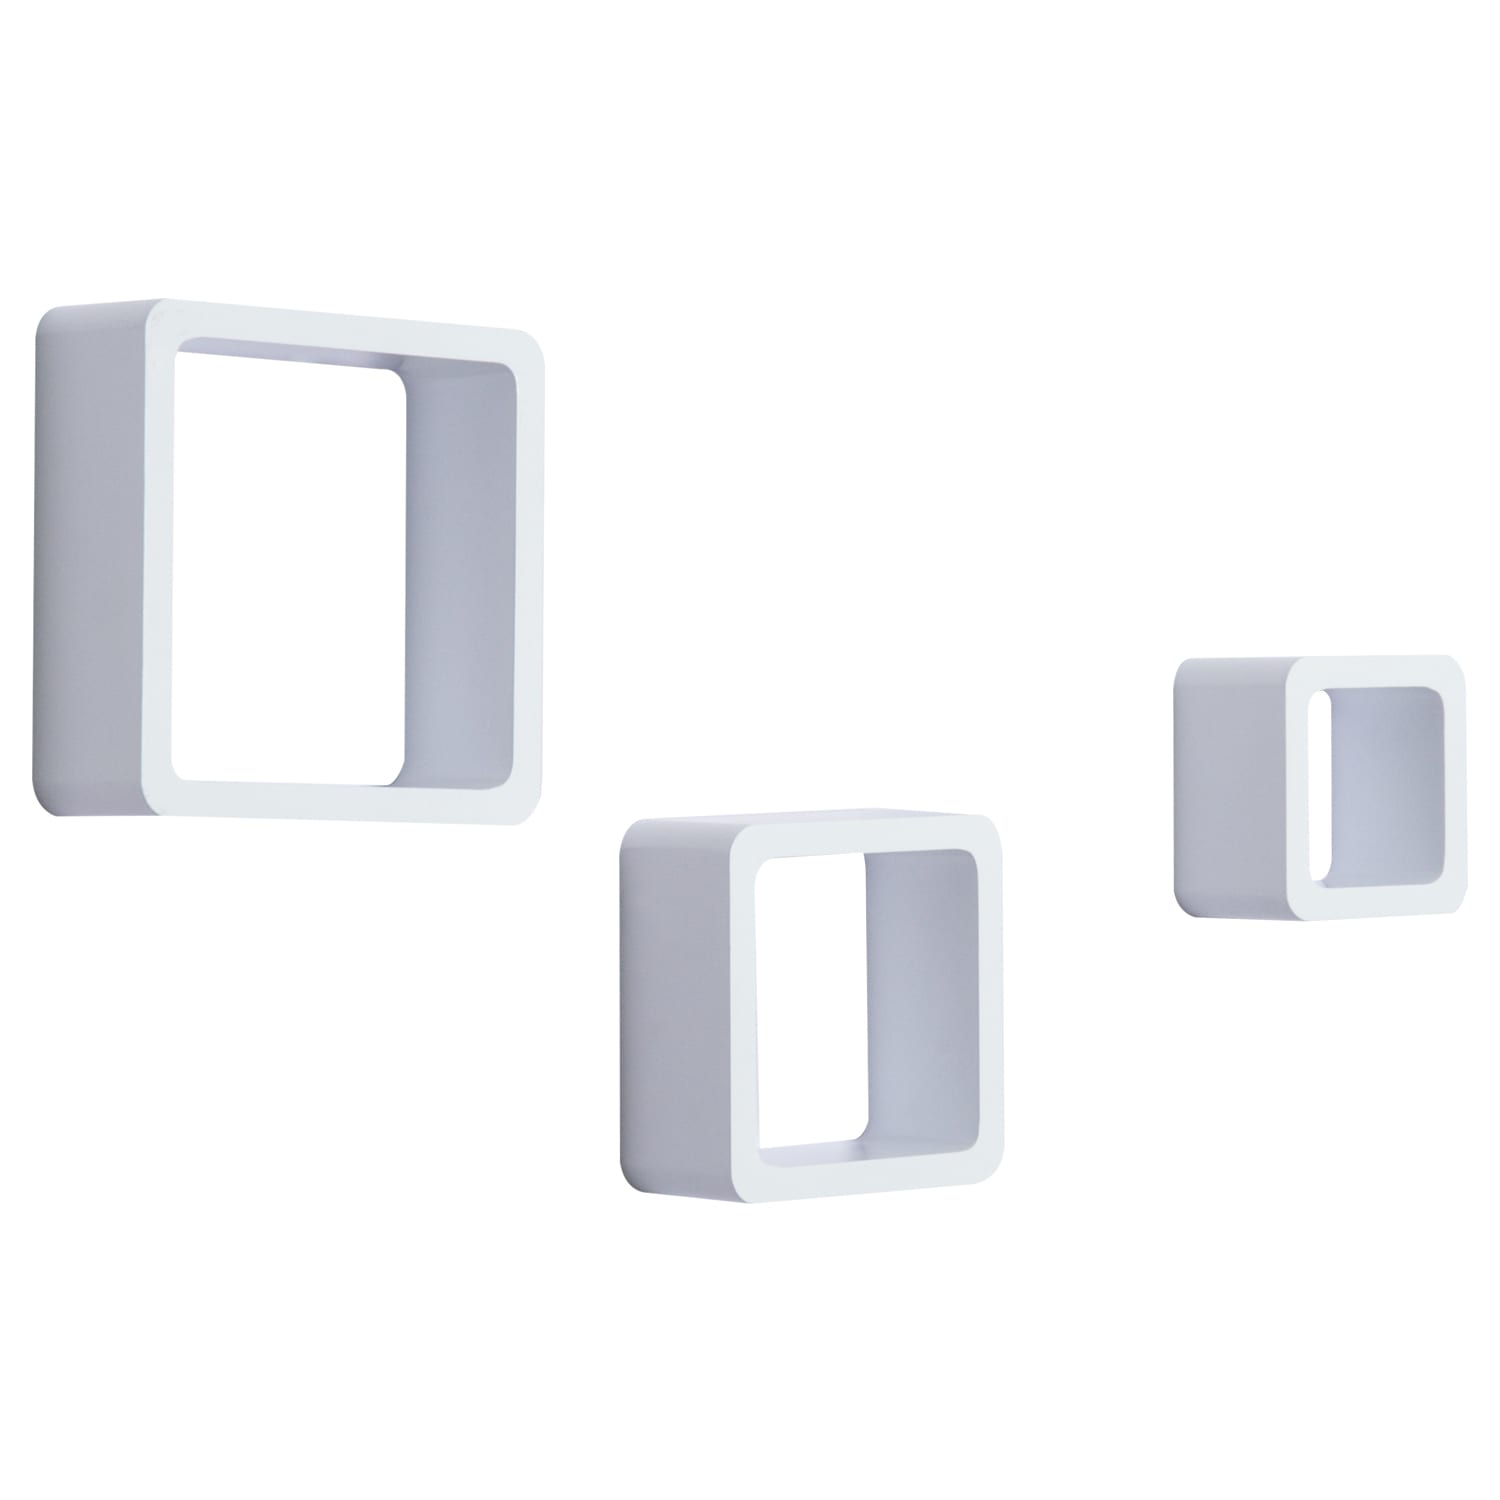 Estantes de pared conjunto de 3 cubos blancos